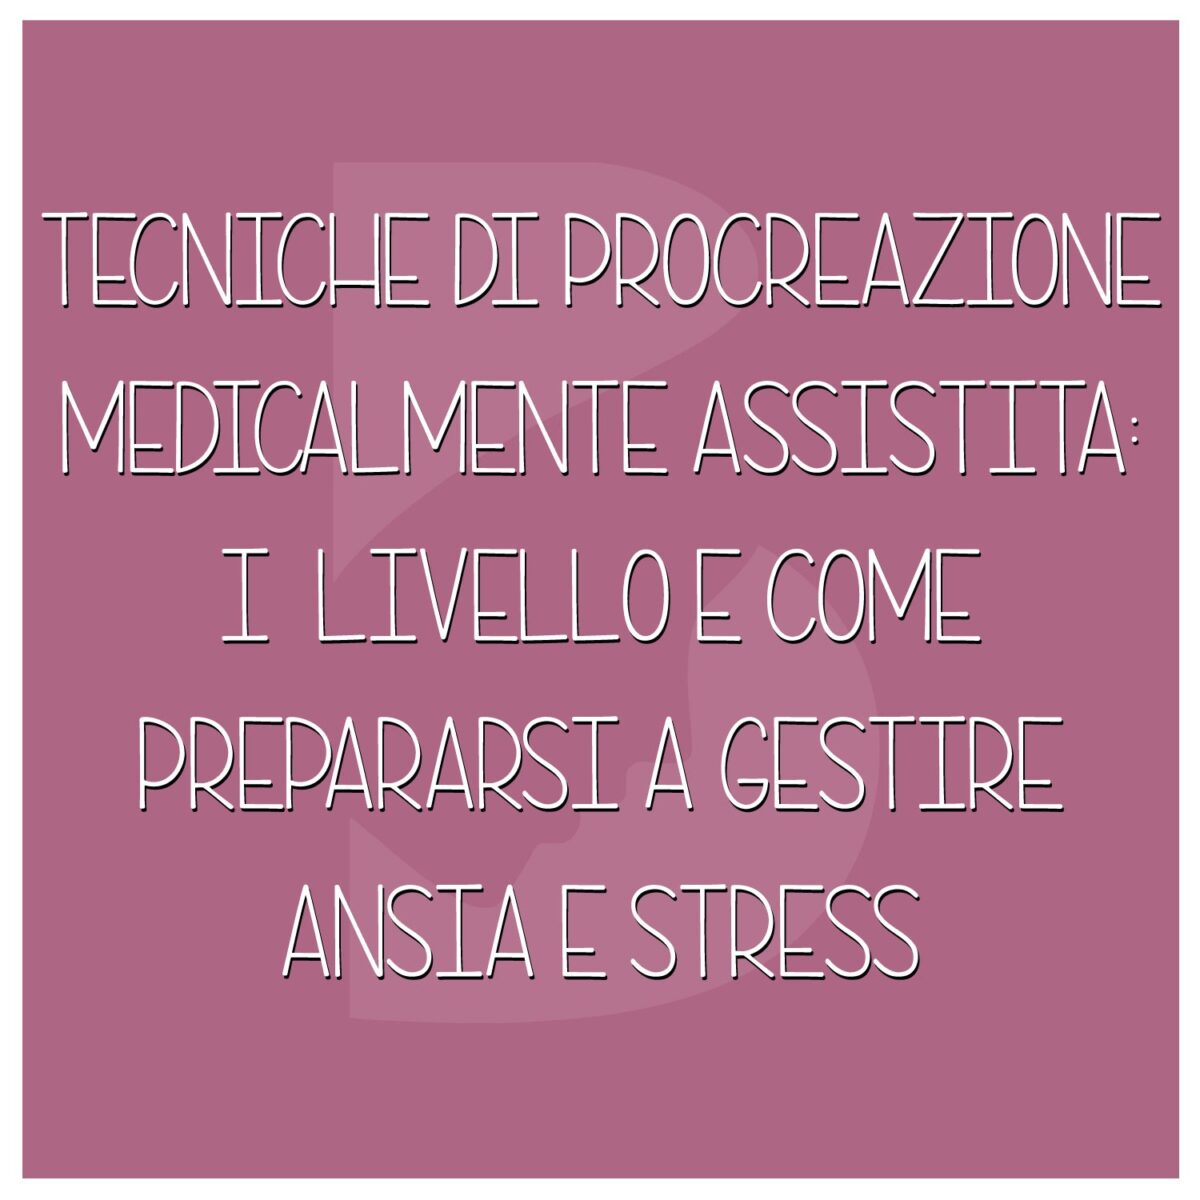 Tecniche-di-procreazione-medicalmente-assistita-I-livello-come-prepararsi-a-gestire-ansia-e-stress-1200x1200.jpeg